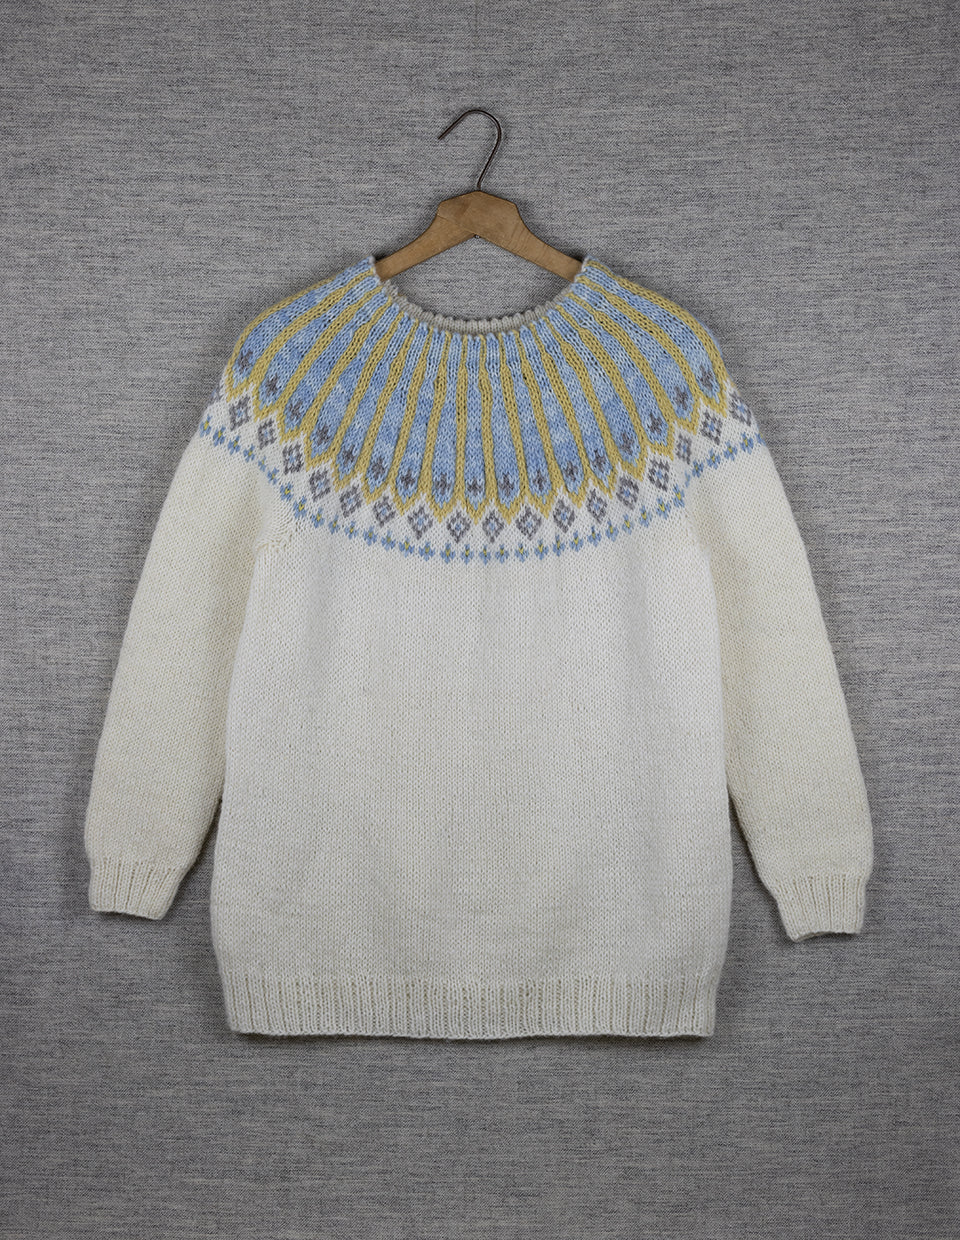 TURID genser, Uttakleiv med plantefarger, strikkepakke